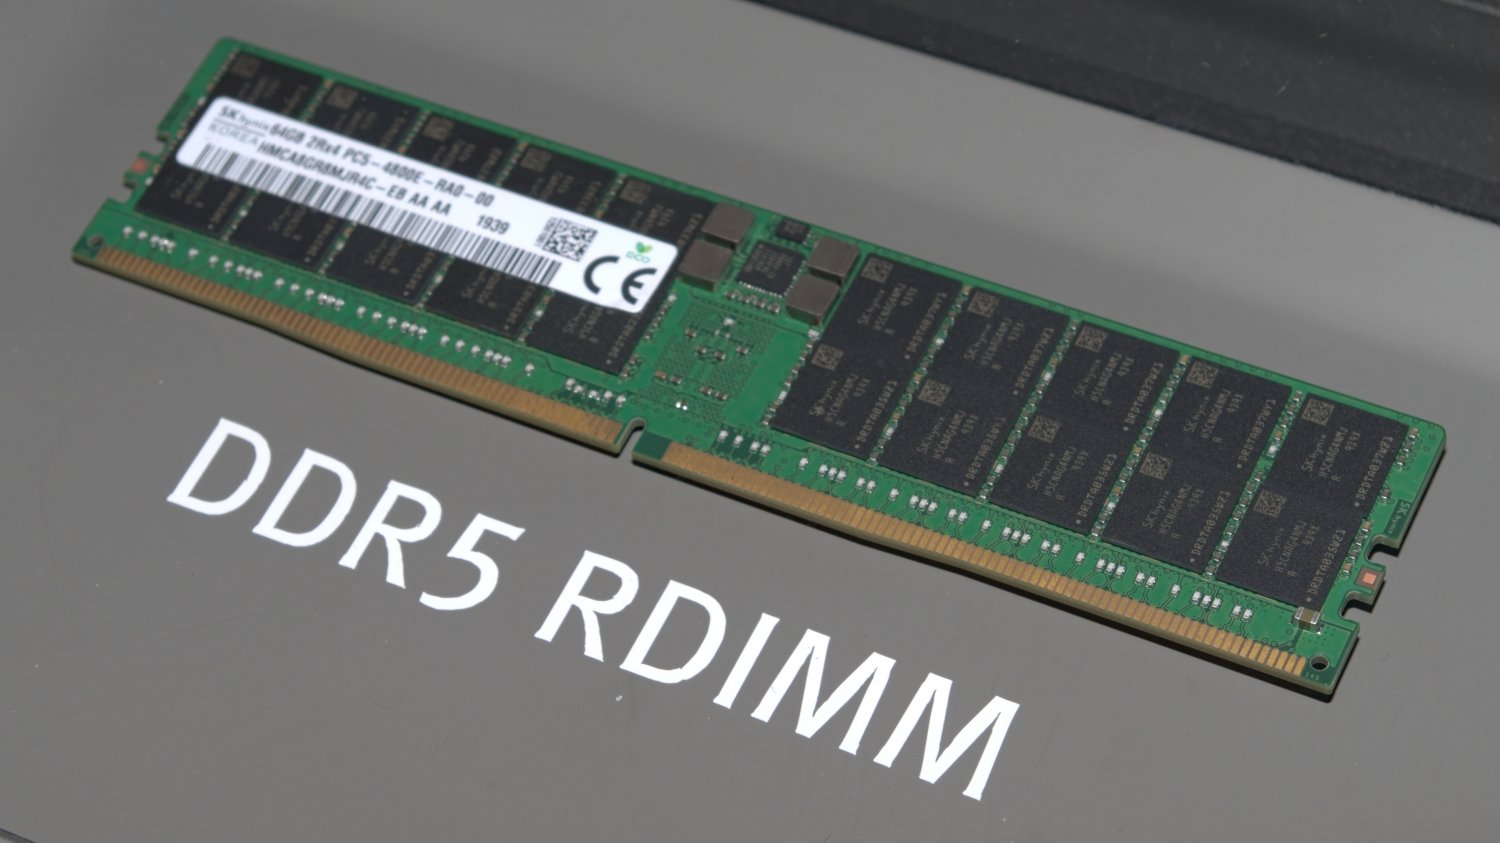 72104 05 amd will support ddr5 and pcie 5 0 in 2022 but intel has first full ลือ!! AMD จะเริ่มใช้งานแรมแบบ DDR5 และ PCIe 5.0 ในปี 2022 แต่คาดว่าคู่แข่งอย่าง INTEL จะเปิดตัวใช้งานก่อนในกลุ่มของเซิฟเวอร์